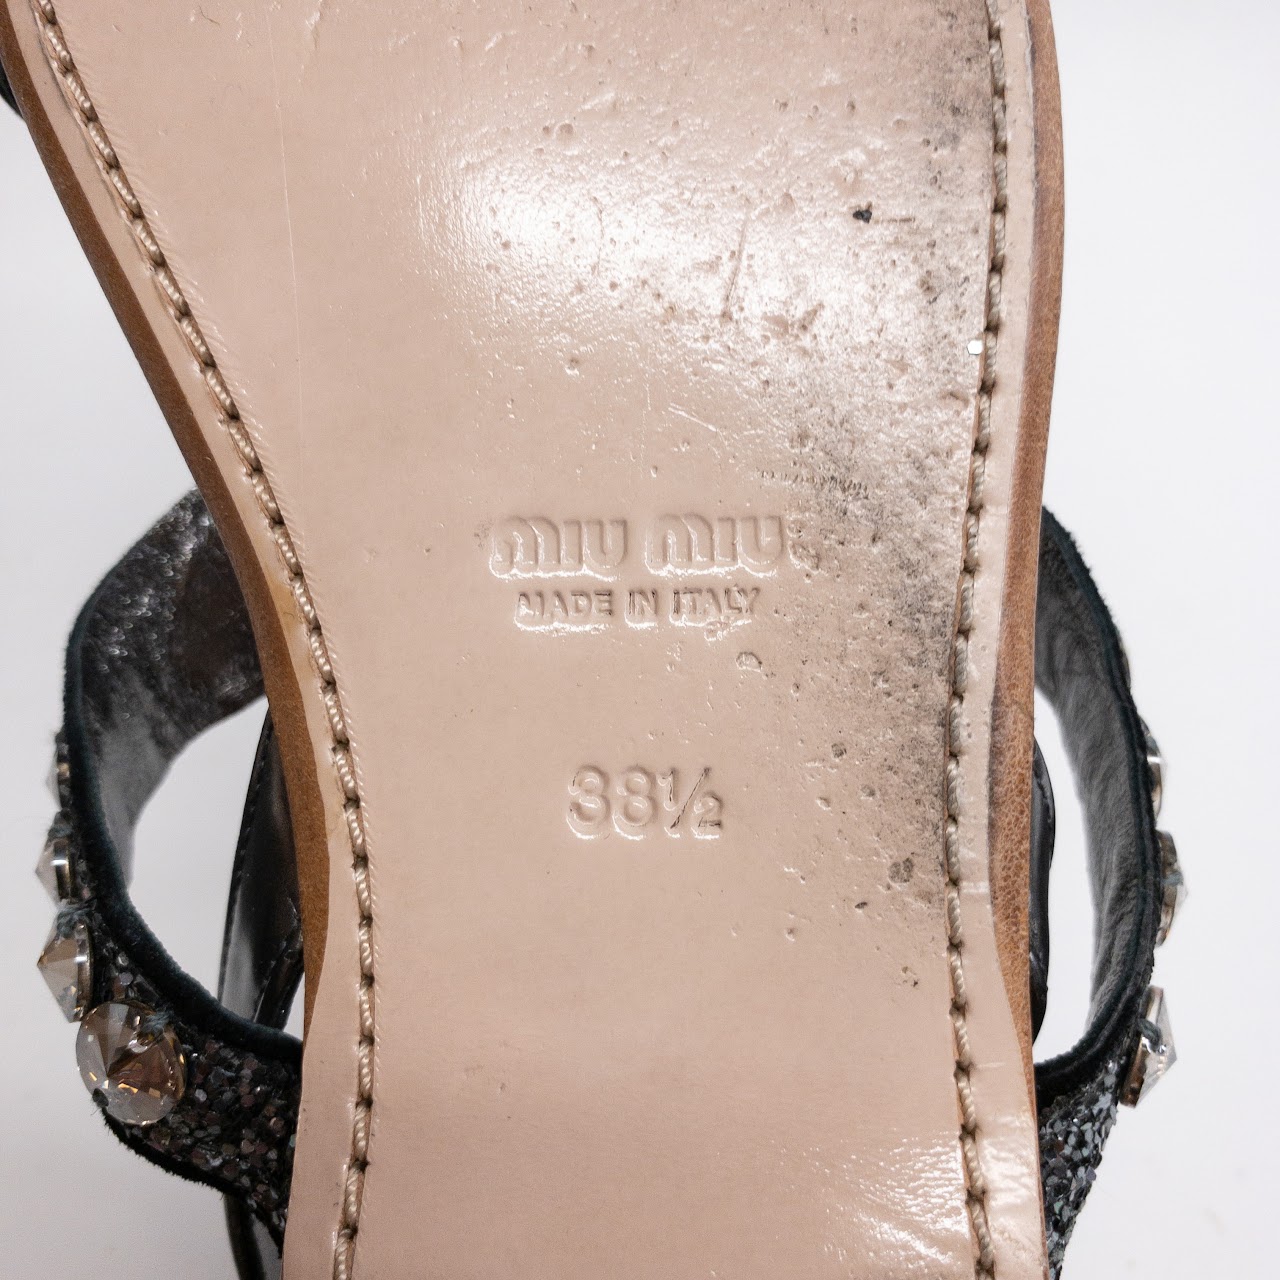 Miu Miu Glitter and Rhinestone Sandals